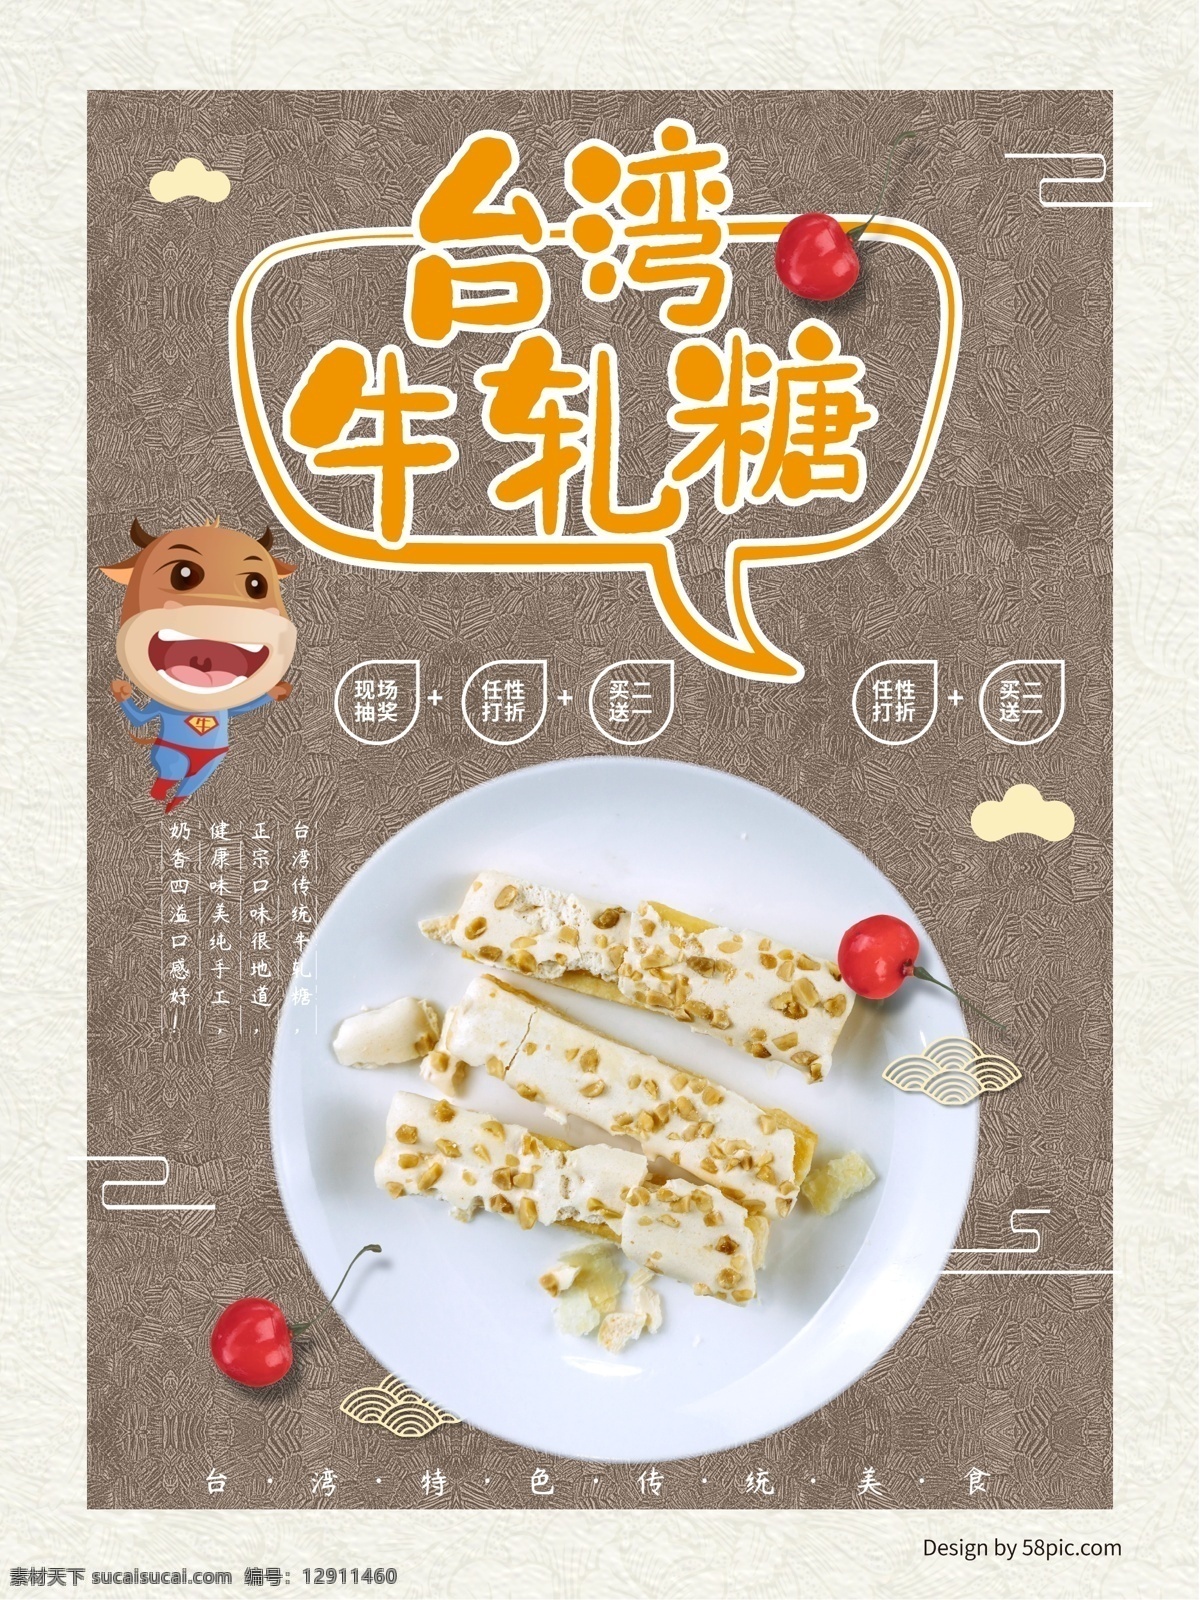 台湾 美食 牛轧糖 海报 糖果 促销 食品